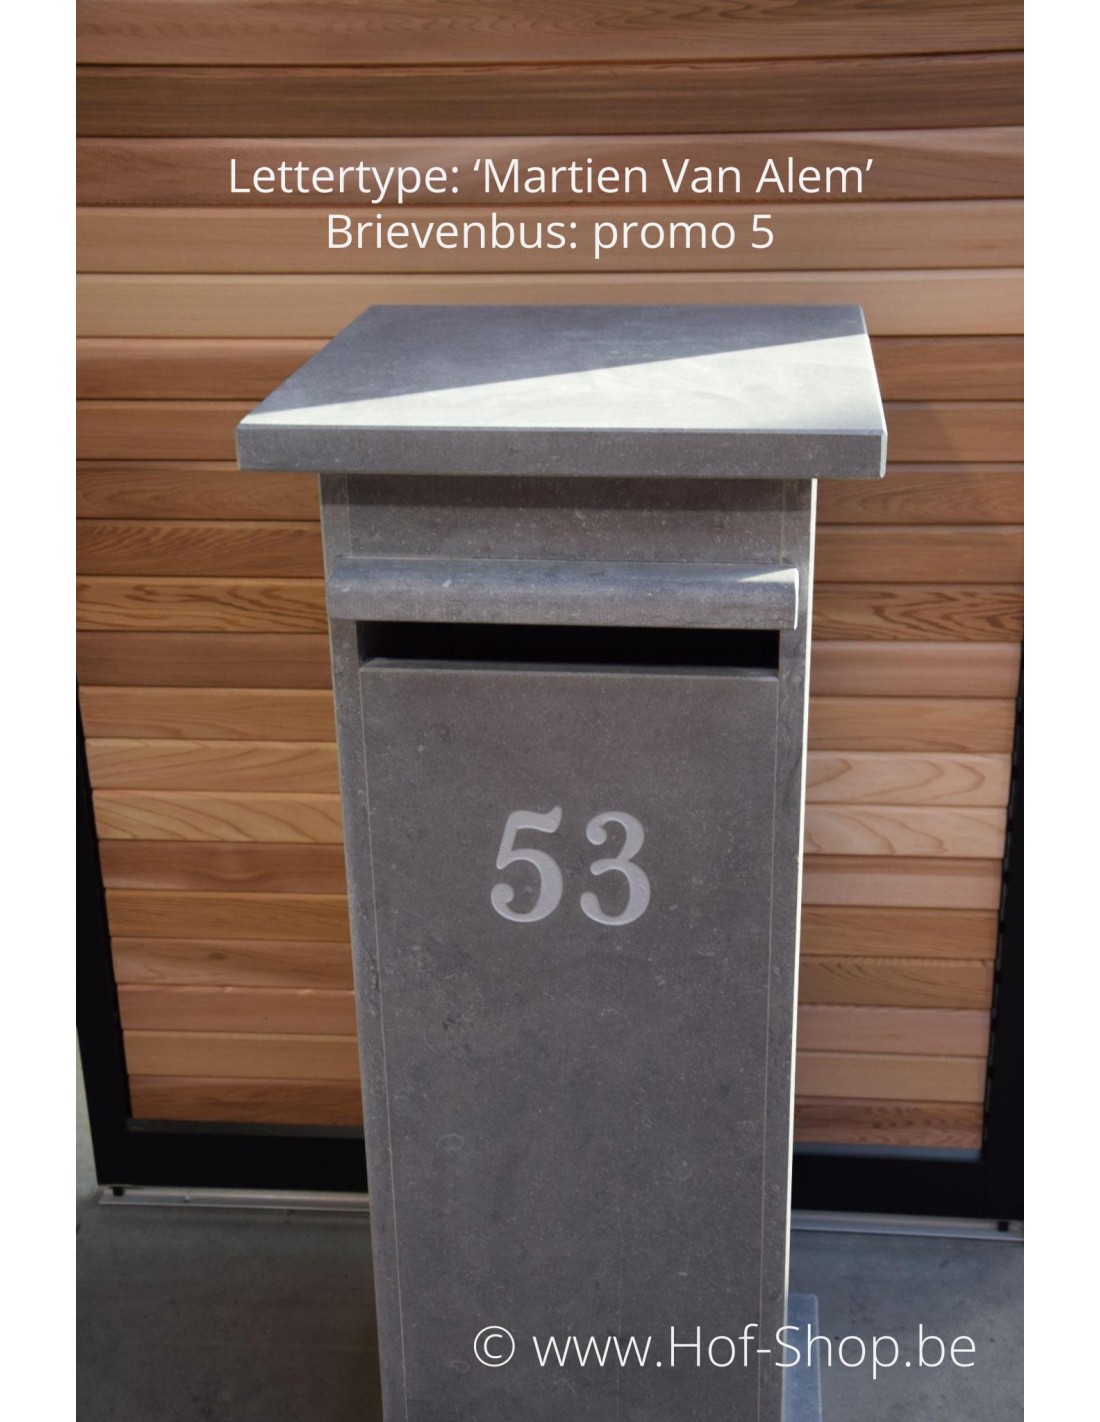 House HTAIGUO s Numéro de boîte aux lettres Panneaux d'adresse